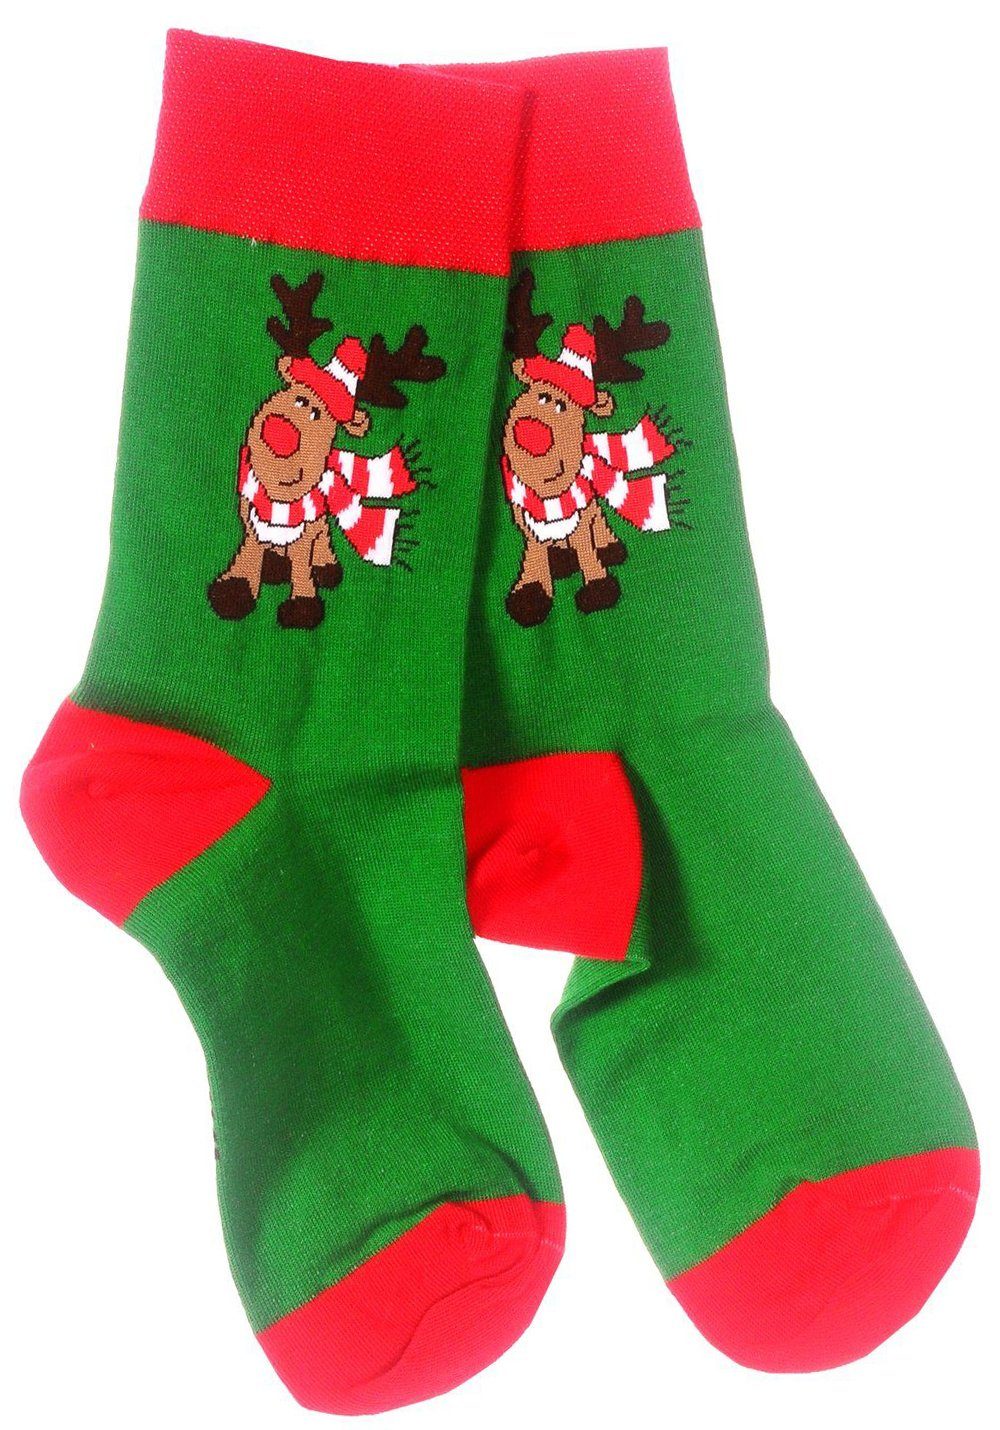 Martinex Socken Freizeitsocken 1 Paar Socken Strümpfe 35 38 39 42 43 46 Weihnachtssocken, festlich, weihnachtlich, für die ganze Familie